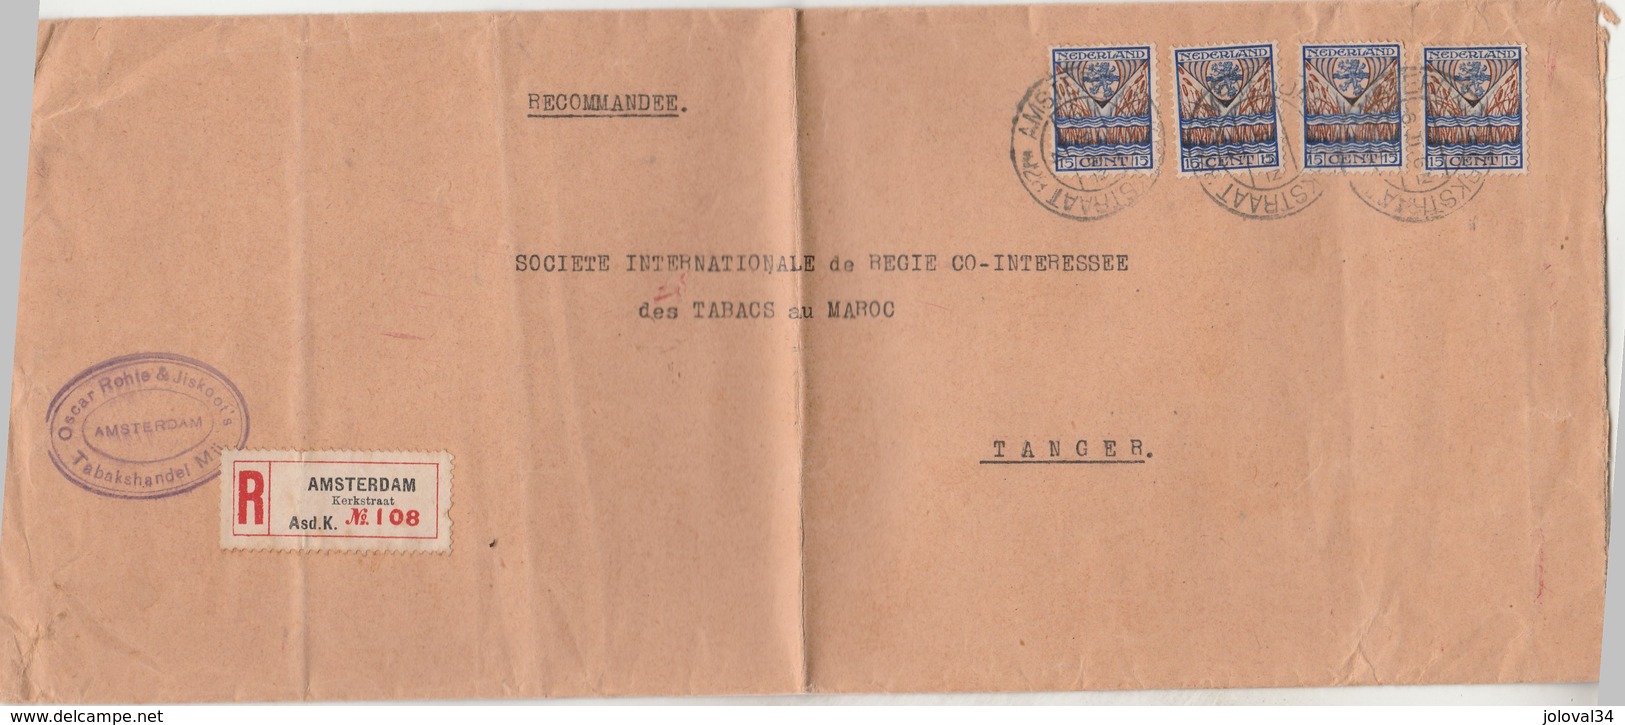 Pays Bas Lettre Recommandée Entête Rohte & Jiskoott's Tabakshandel AMSTERDAM 1928 Pour Régie Tabacs Tanger Maroc - Covers & Documents